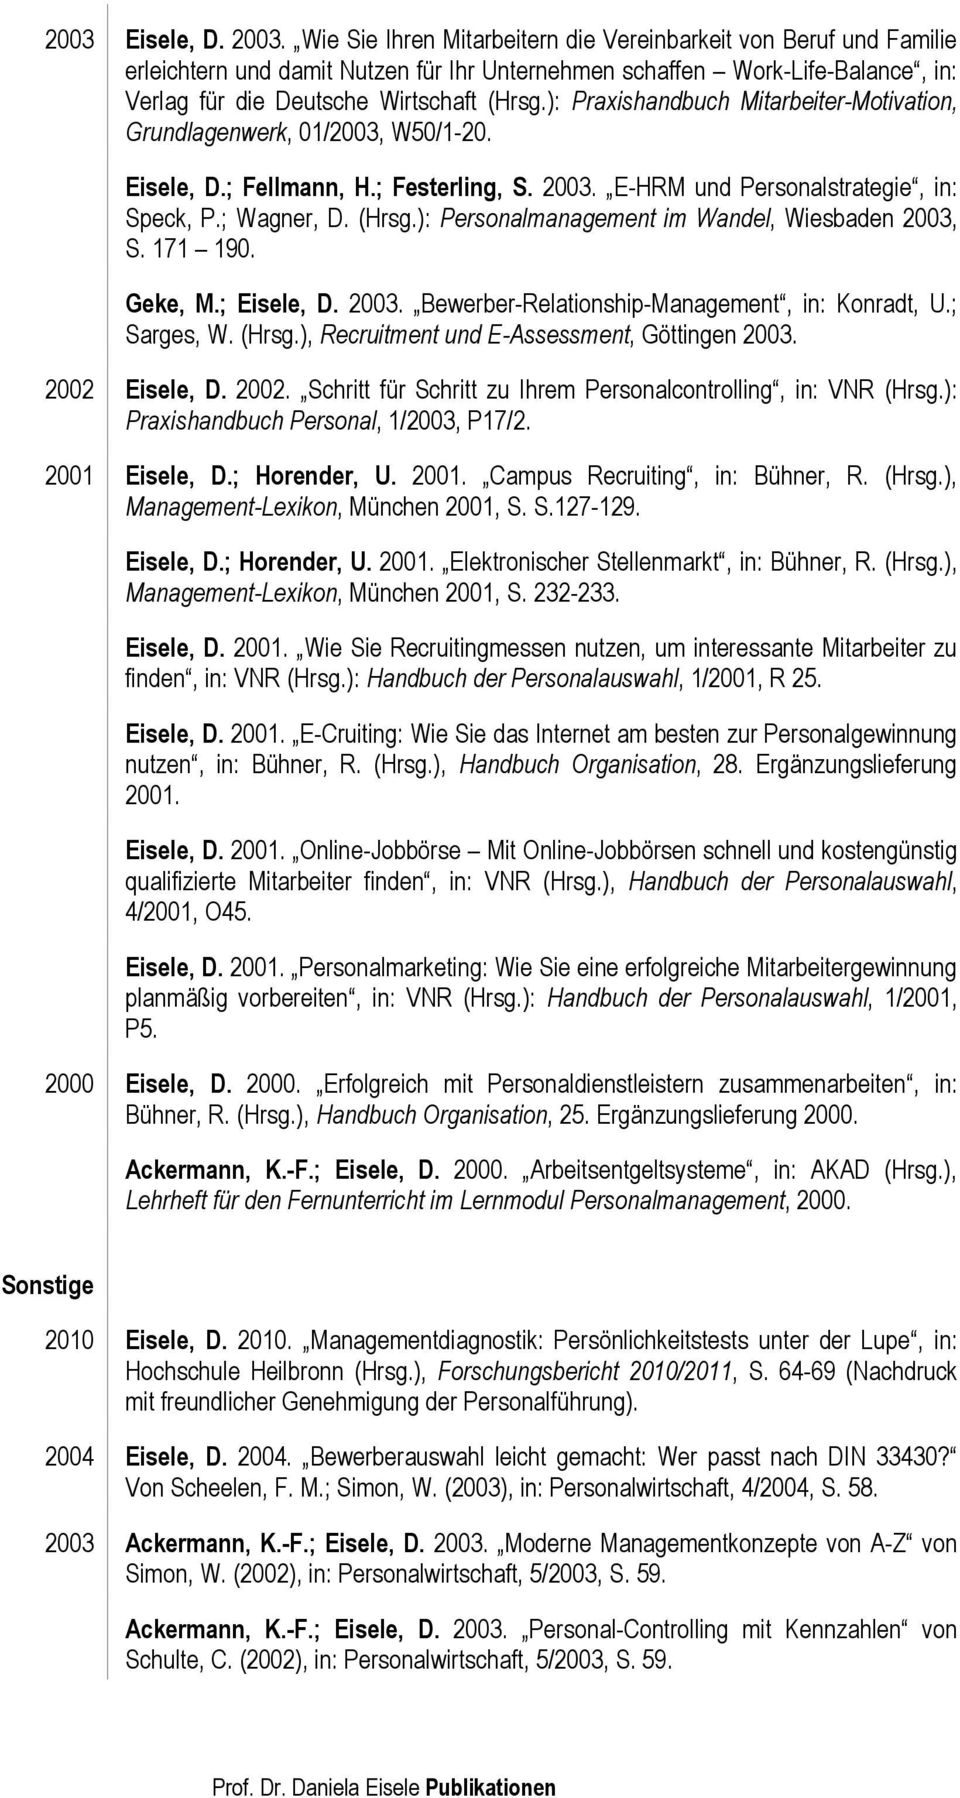 ): Praxishandbuch Mitarbeiter-Motivation, Grundlagenwerk, 01/2003, W50/1-20. Eisele, D.; Fellmann, H.; Festerling, S. 2003. E-HRM und Personalstrategie, in: Speck, P.; Wagner, D. (Hrsg.